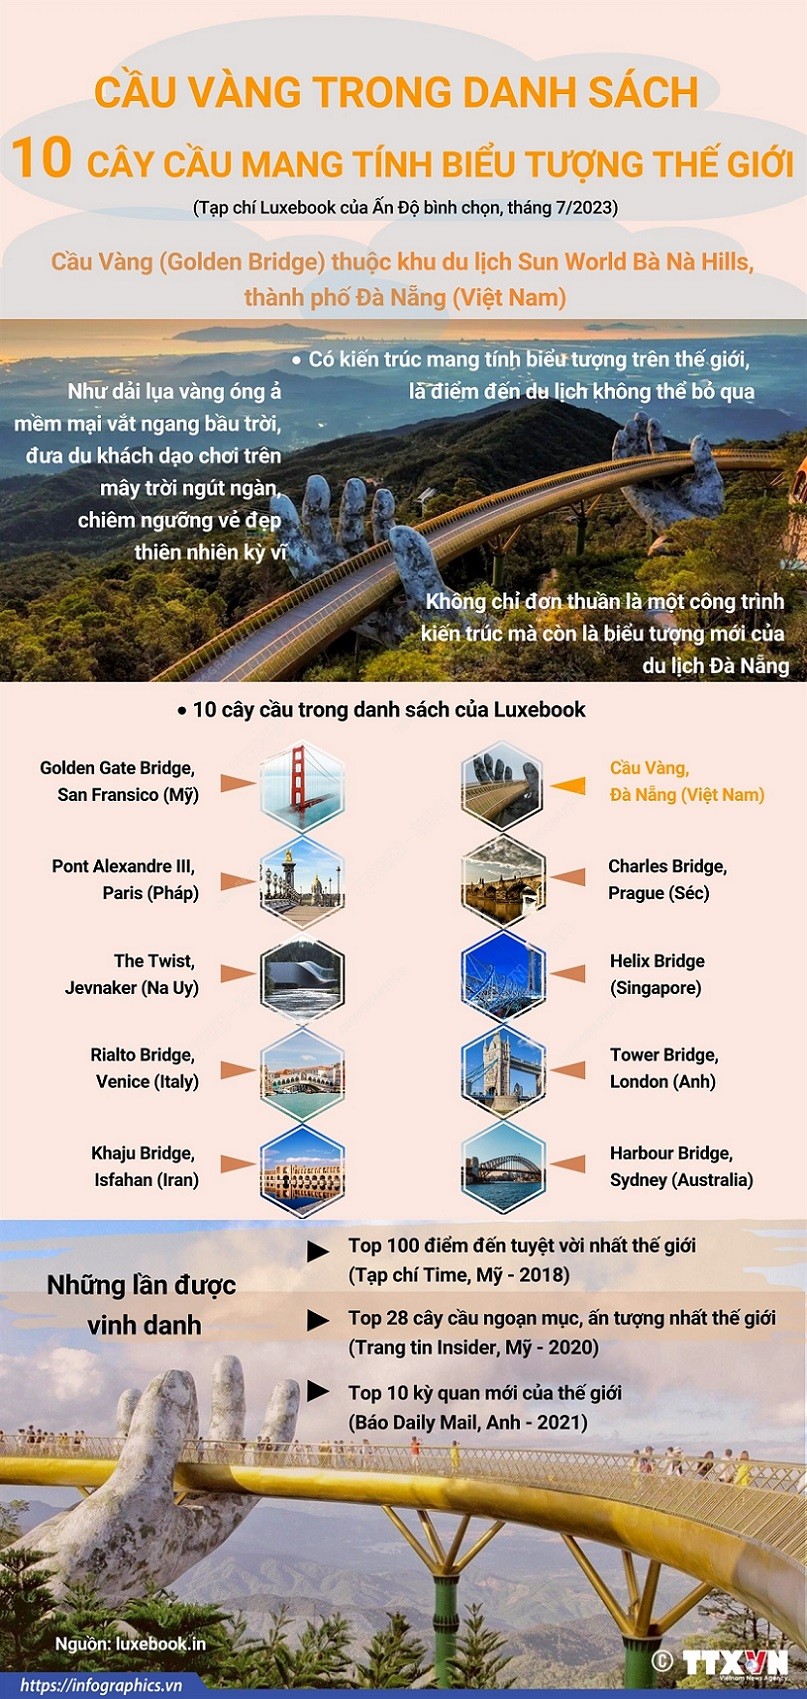 Cầu Vàng ở Đà Nẵng trở thành một trong 10 cây cầu mang tính biểu tượng thế giới